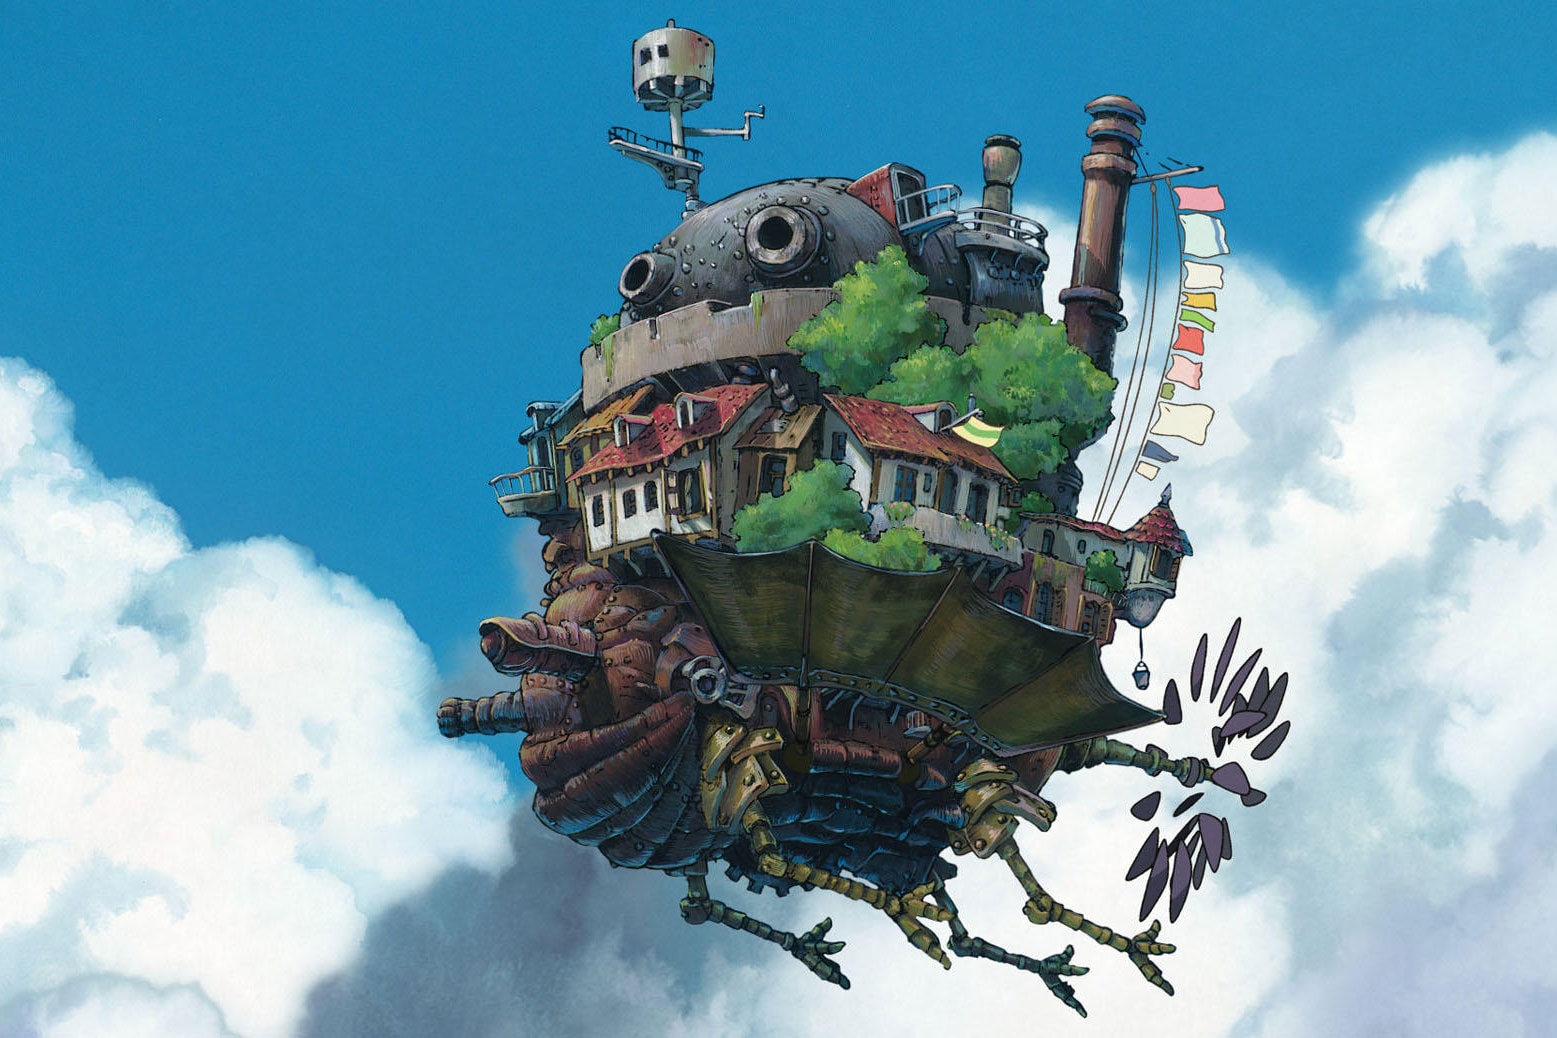 2022年オープン予定のジブリパークでハウルの城が再現されることが判明 Studio Ghibli Theme Park Howl Moving Castle princess mononoke news